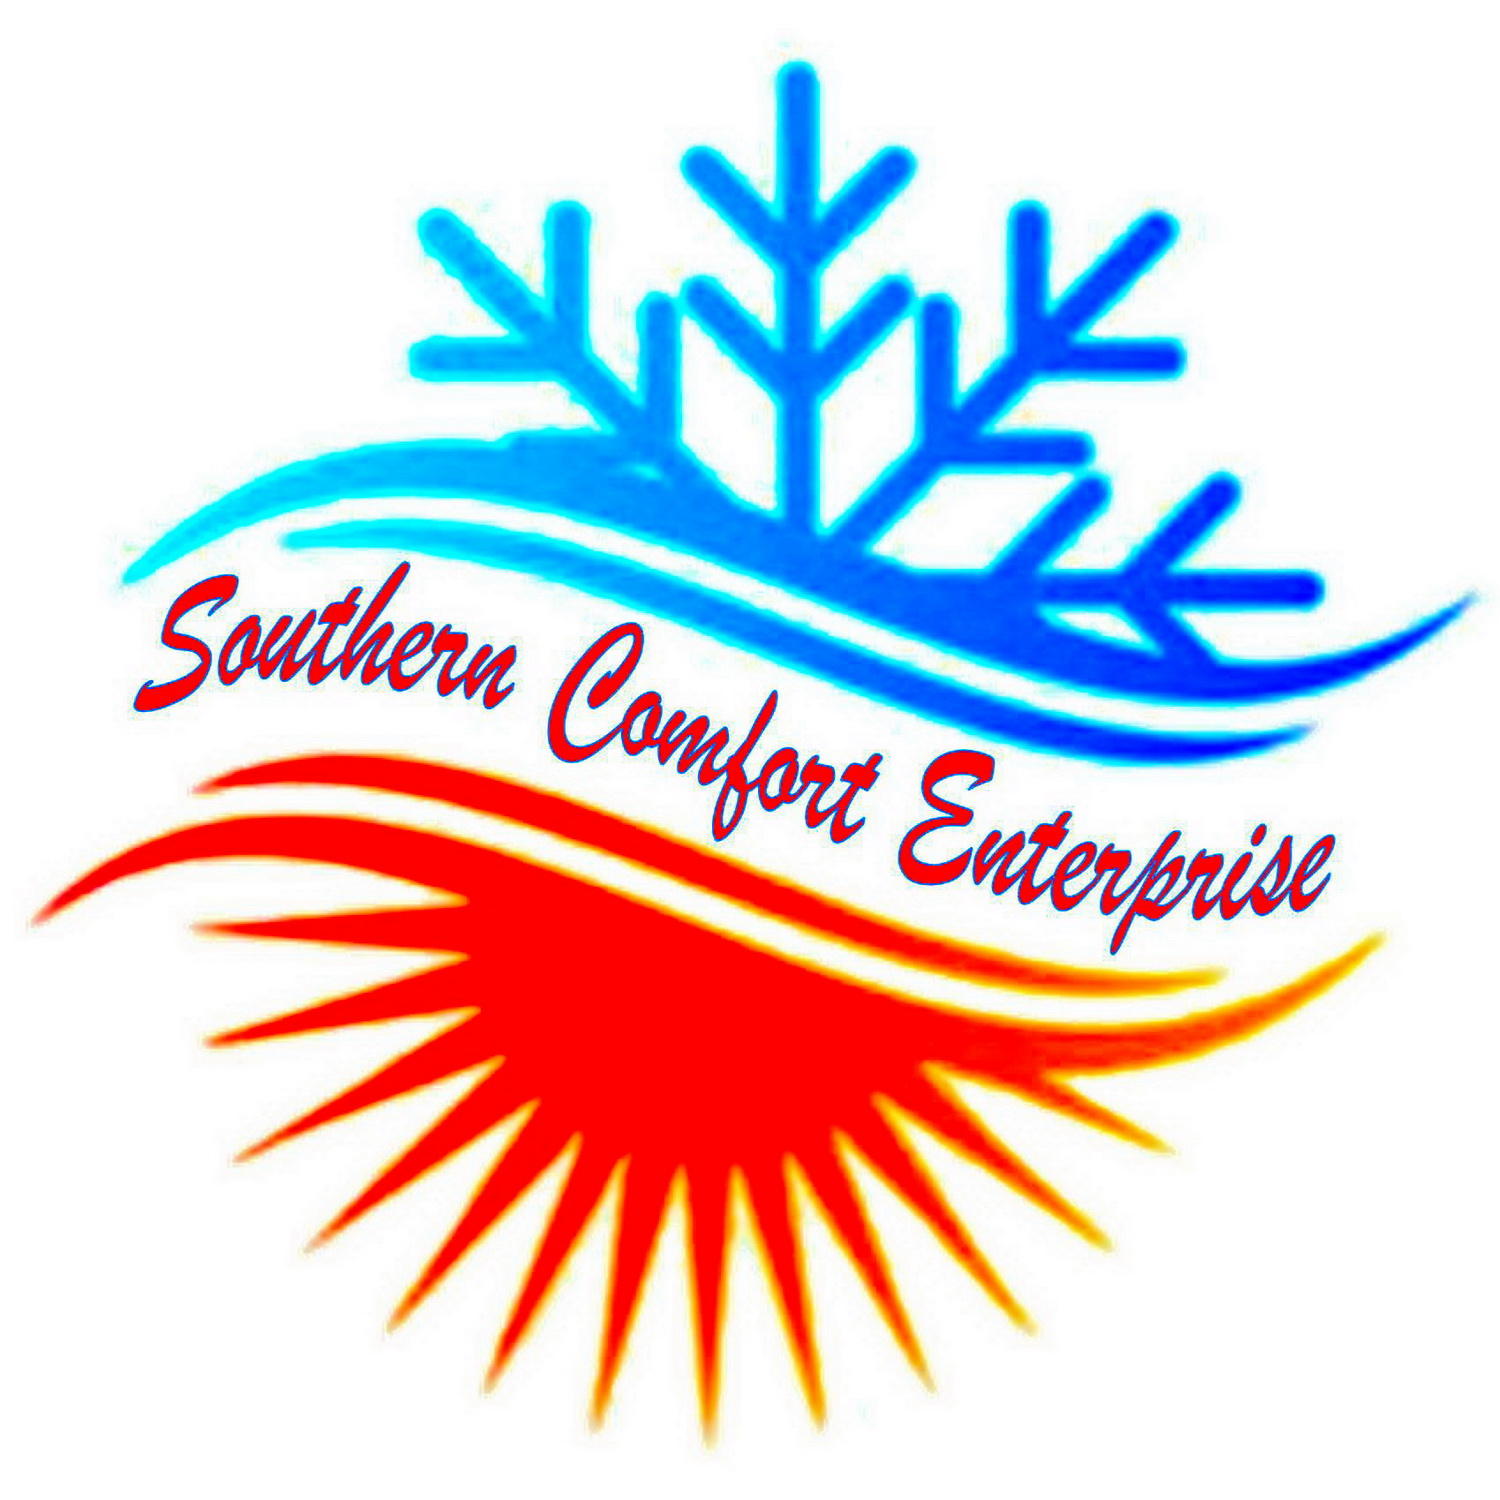 Southern Comfort Enterprises 4109 Co Rd 656, Webster Florida 33597